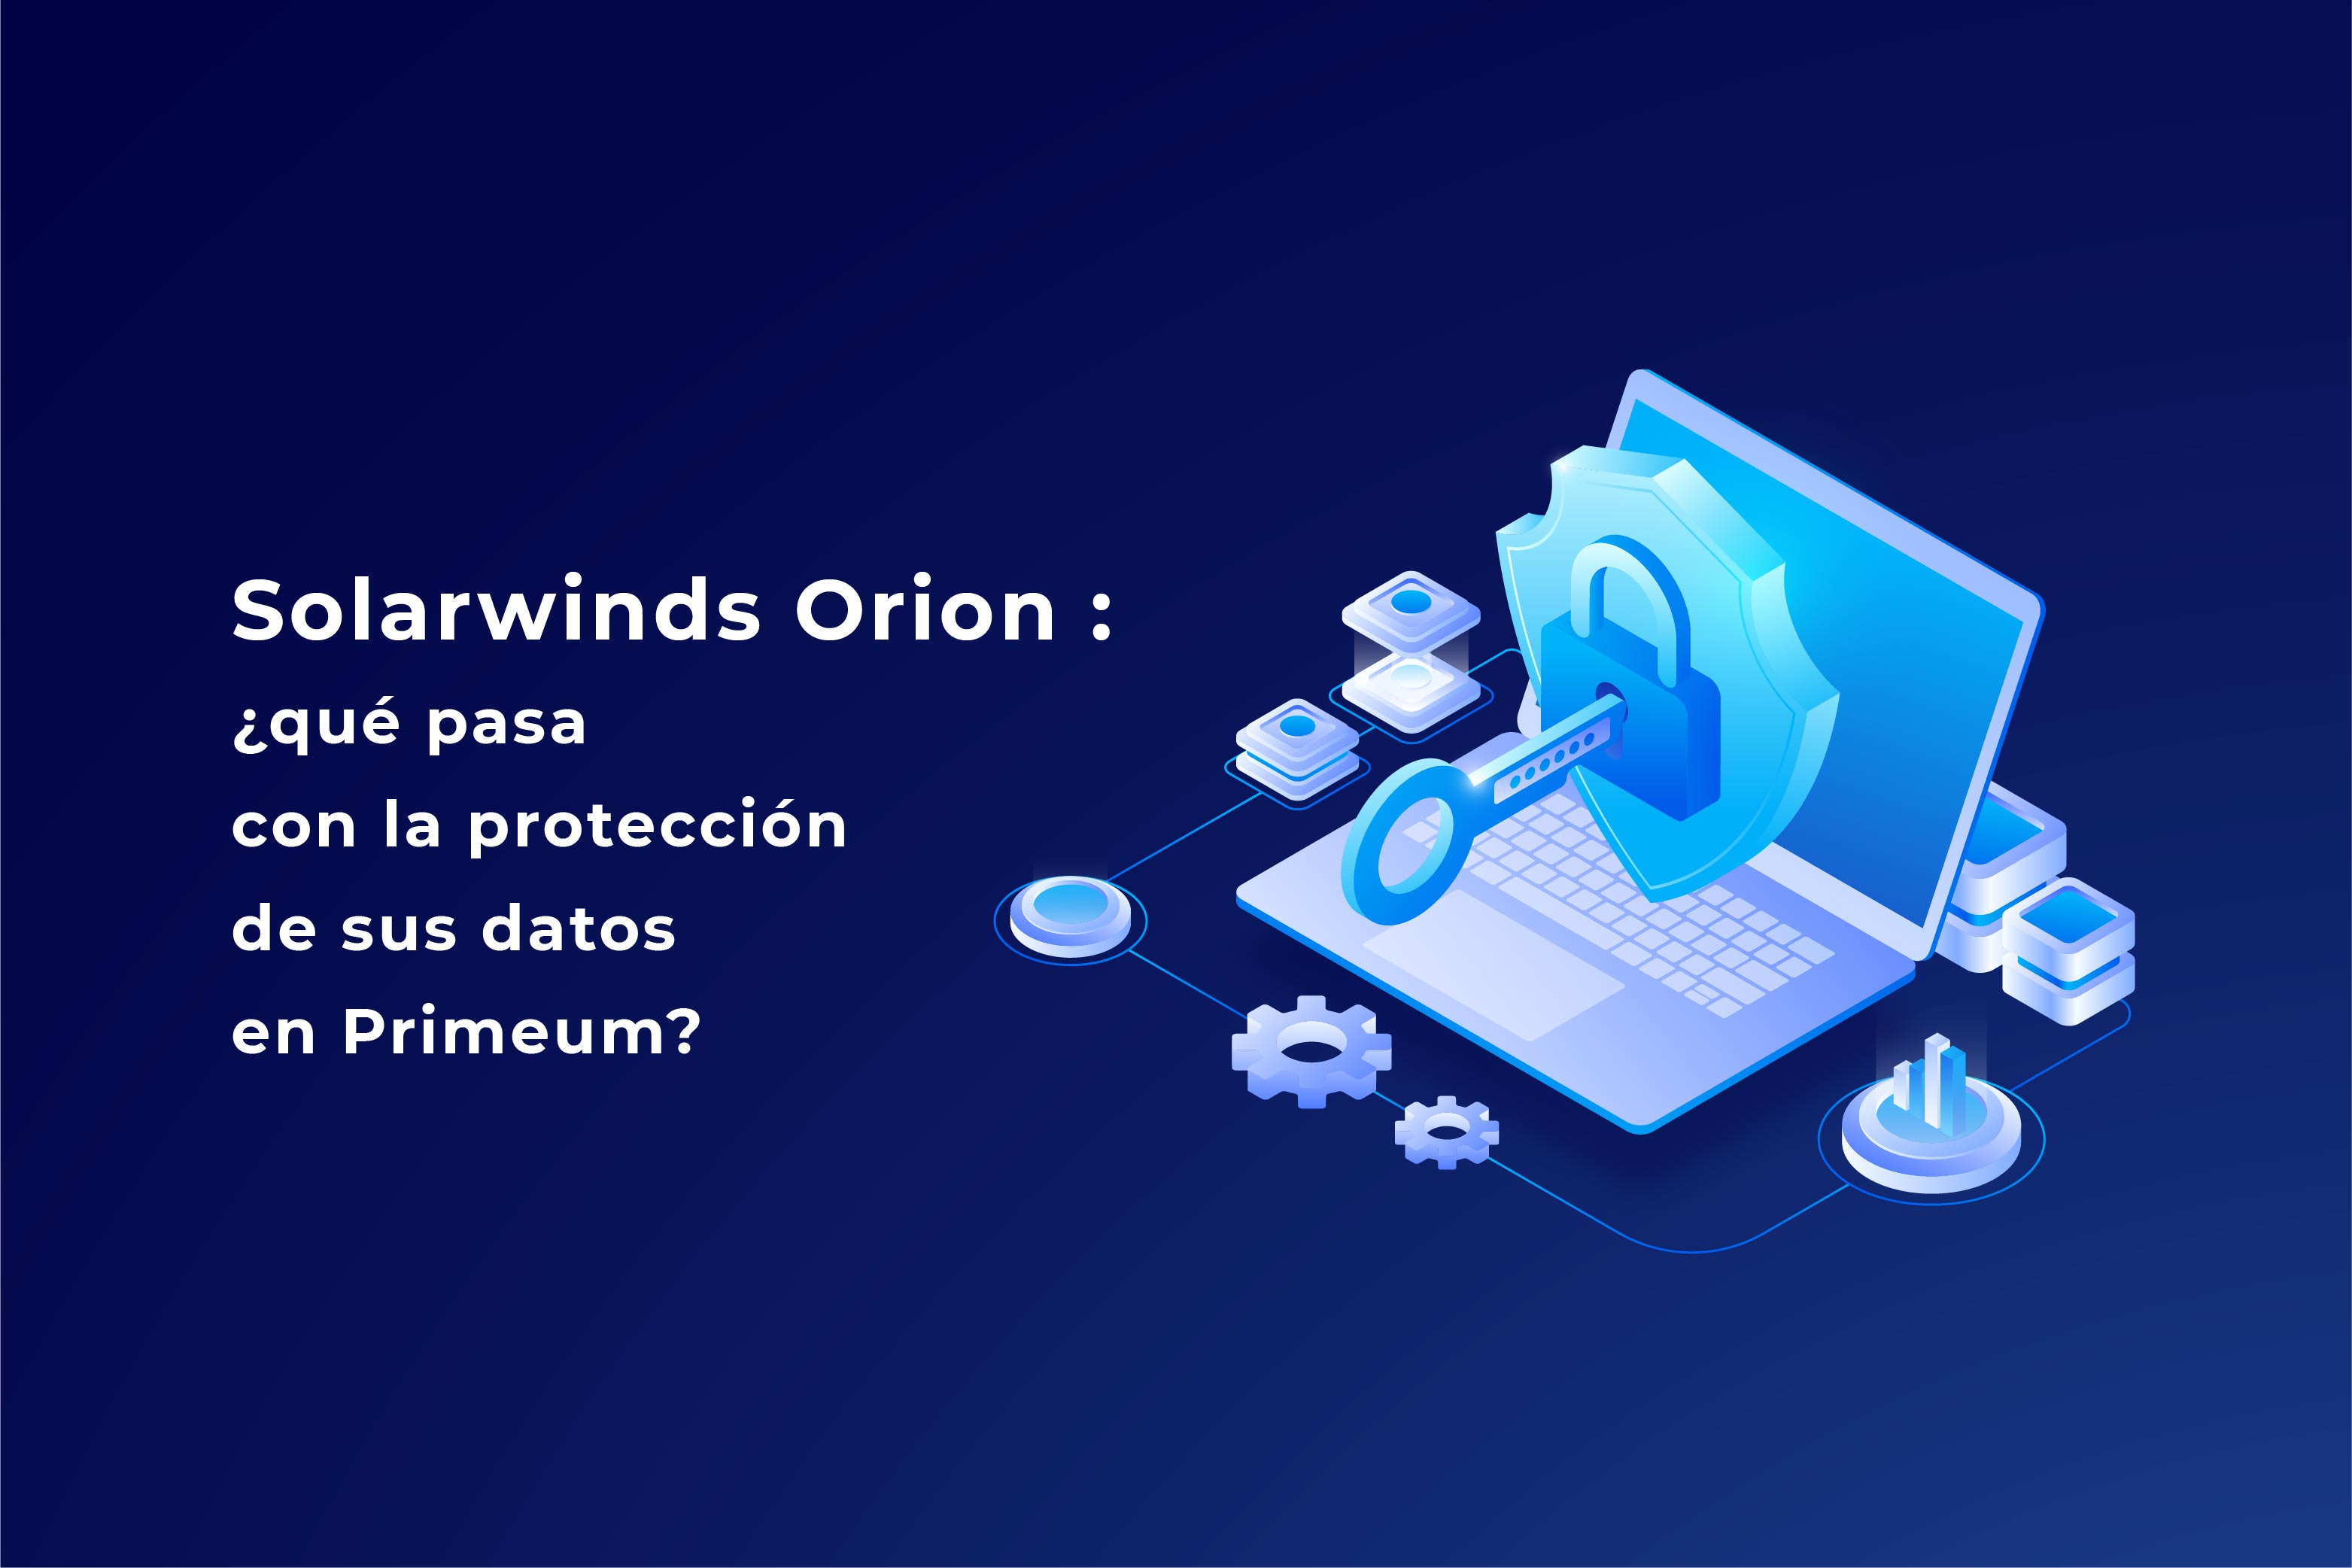 Solarwinds Orion : ¿qué pasa con la protección de sus datos en Primeum?